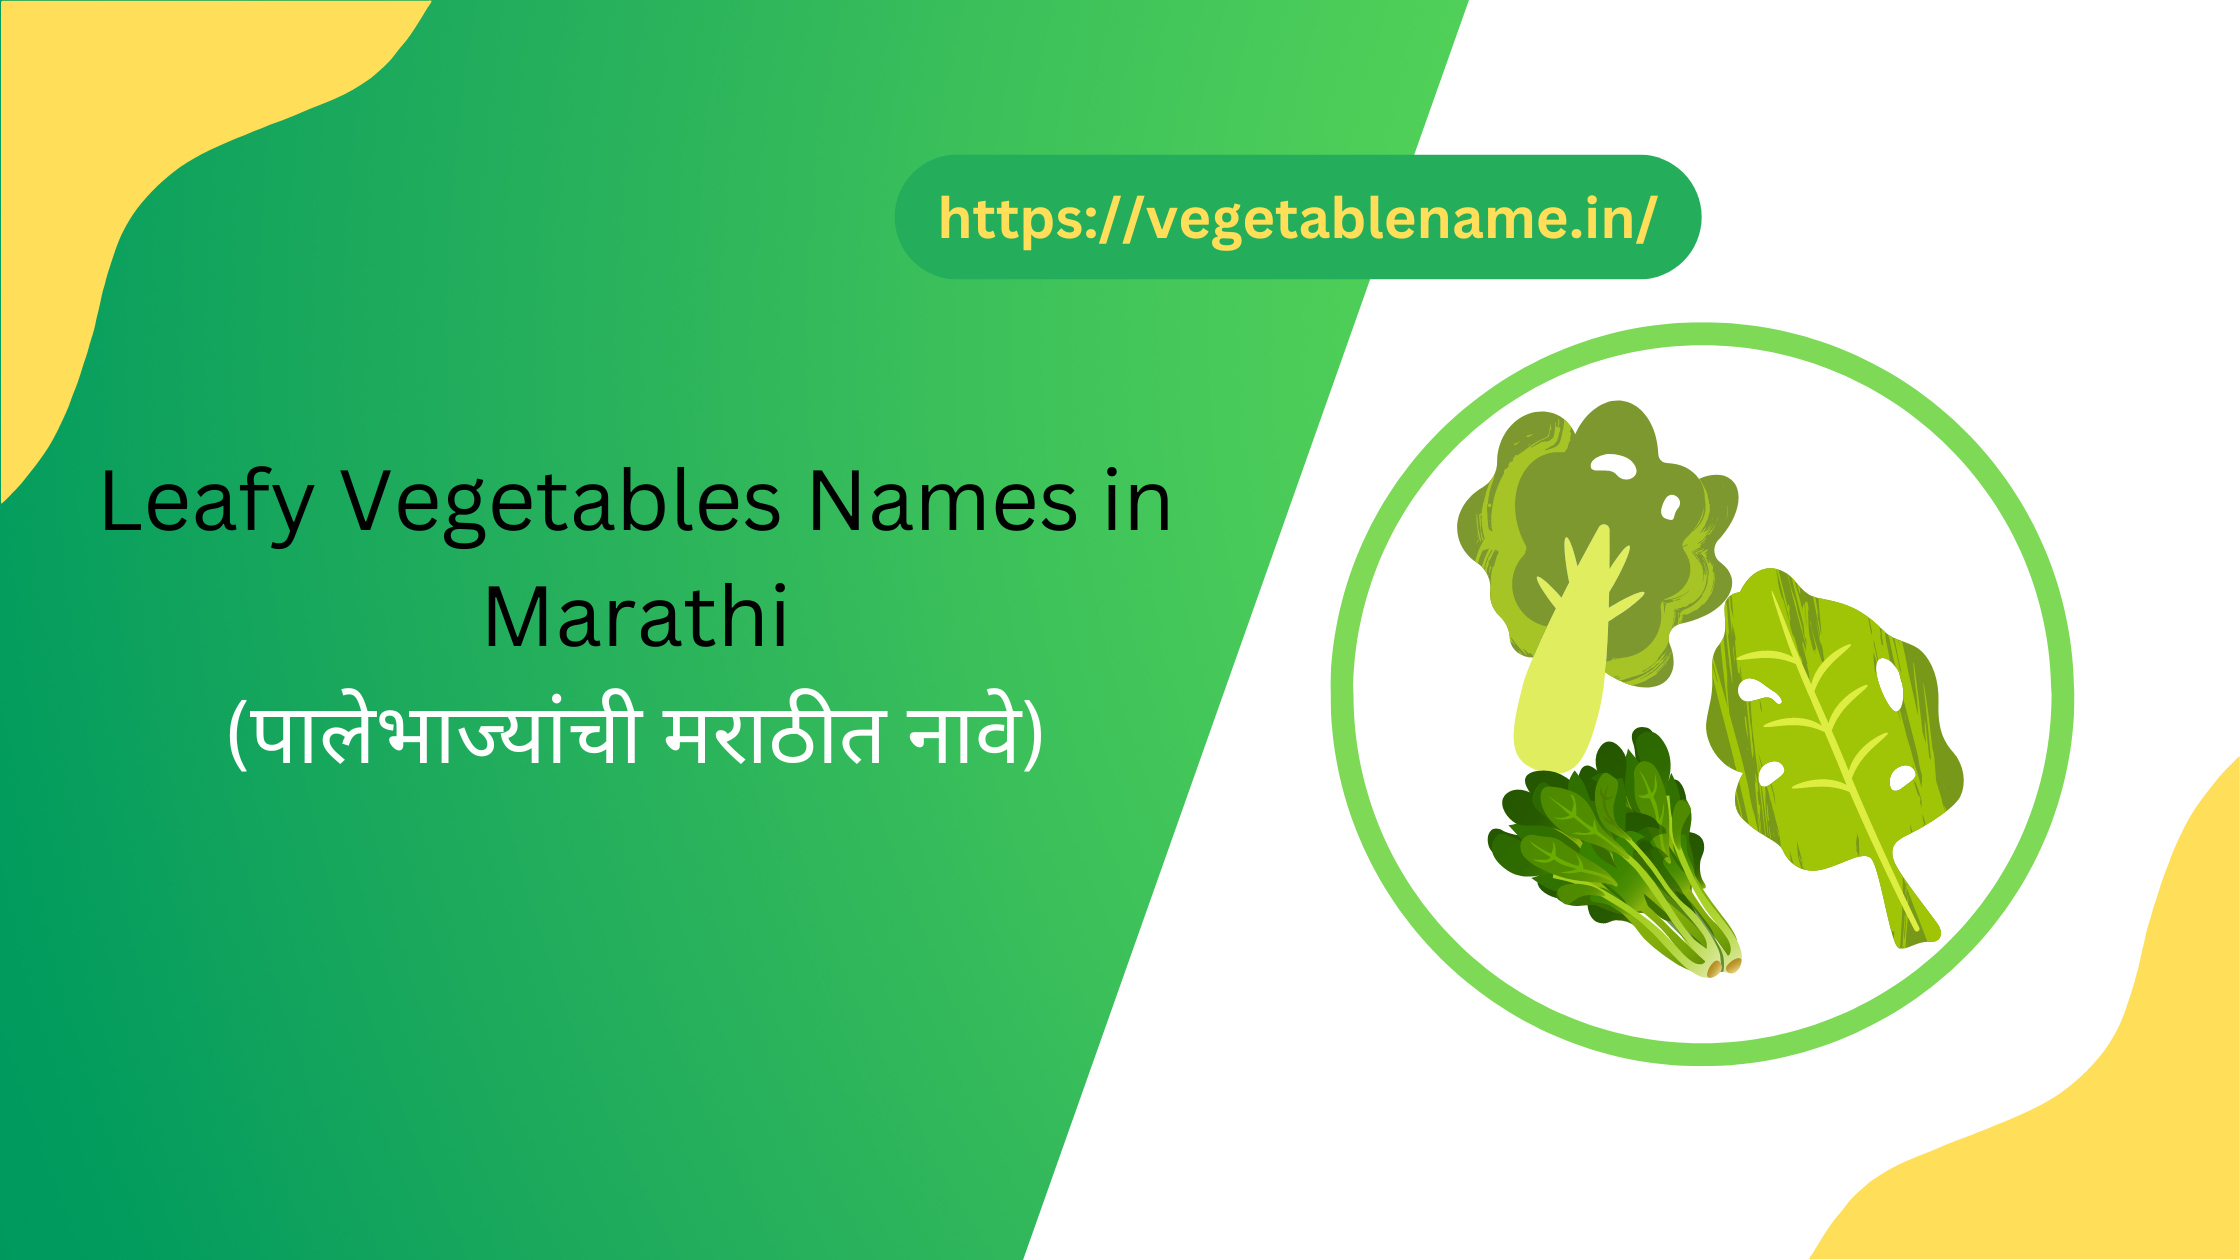 Leafy Vegetables Names in Marathi